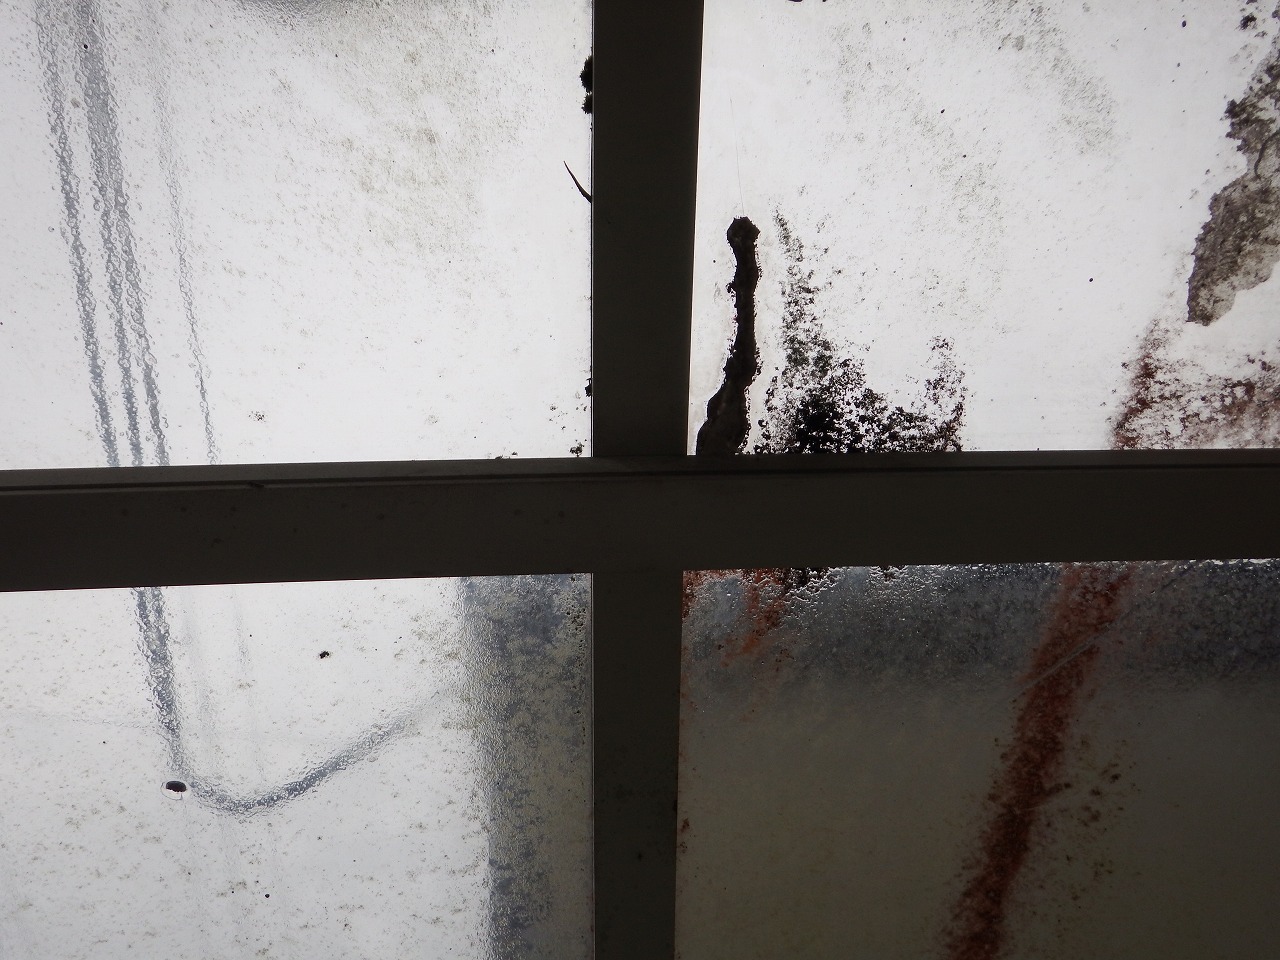 奈良市出屋敷町の雨漏りのカーポート屋根